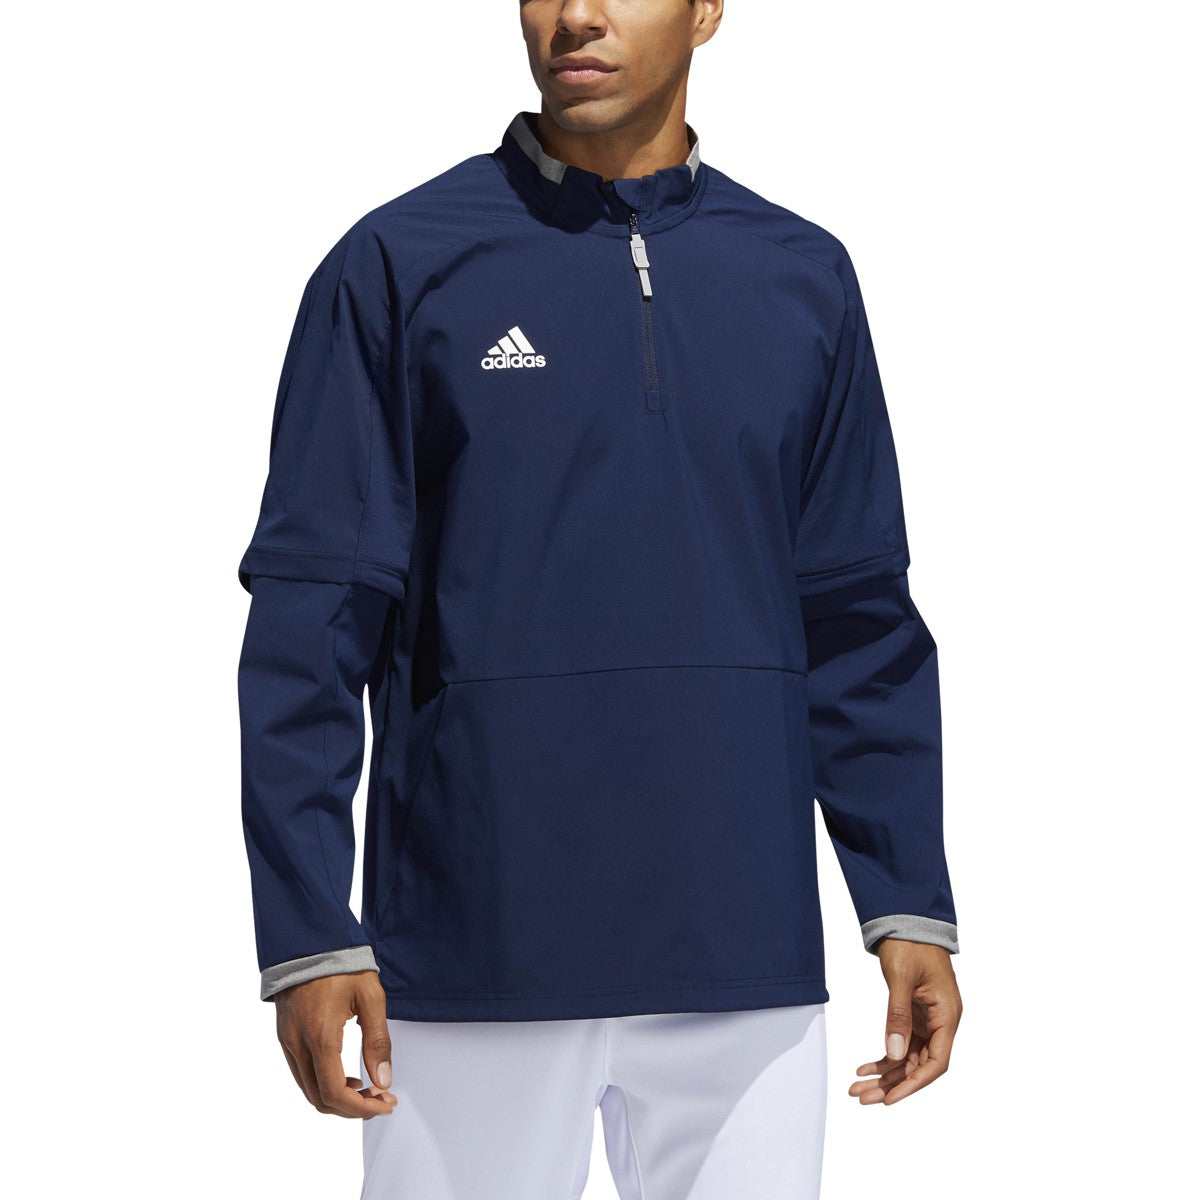 adidas men's fielder's choice 2.0 convertible jacket